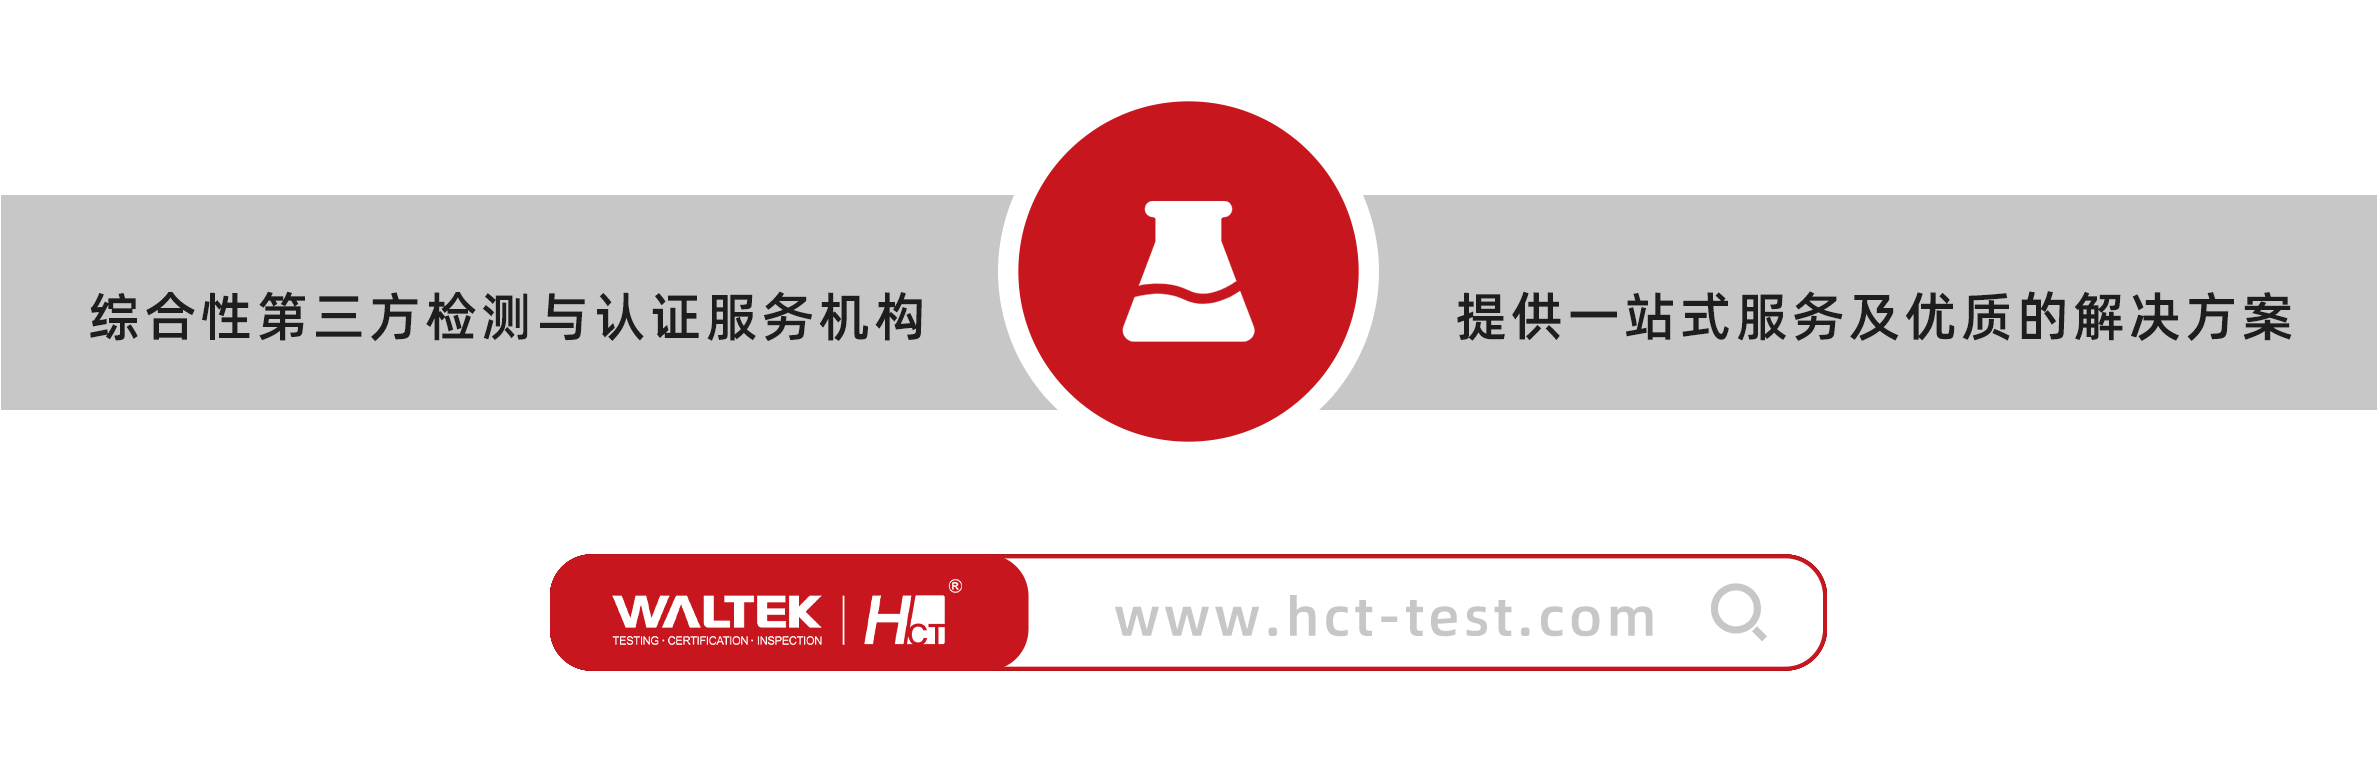 虹彩检测在2022年广东省职业卫生工程检测能力（罩口风速）室间比对活动中获满意结果(图1)